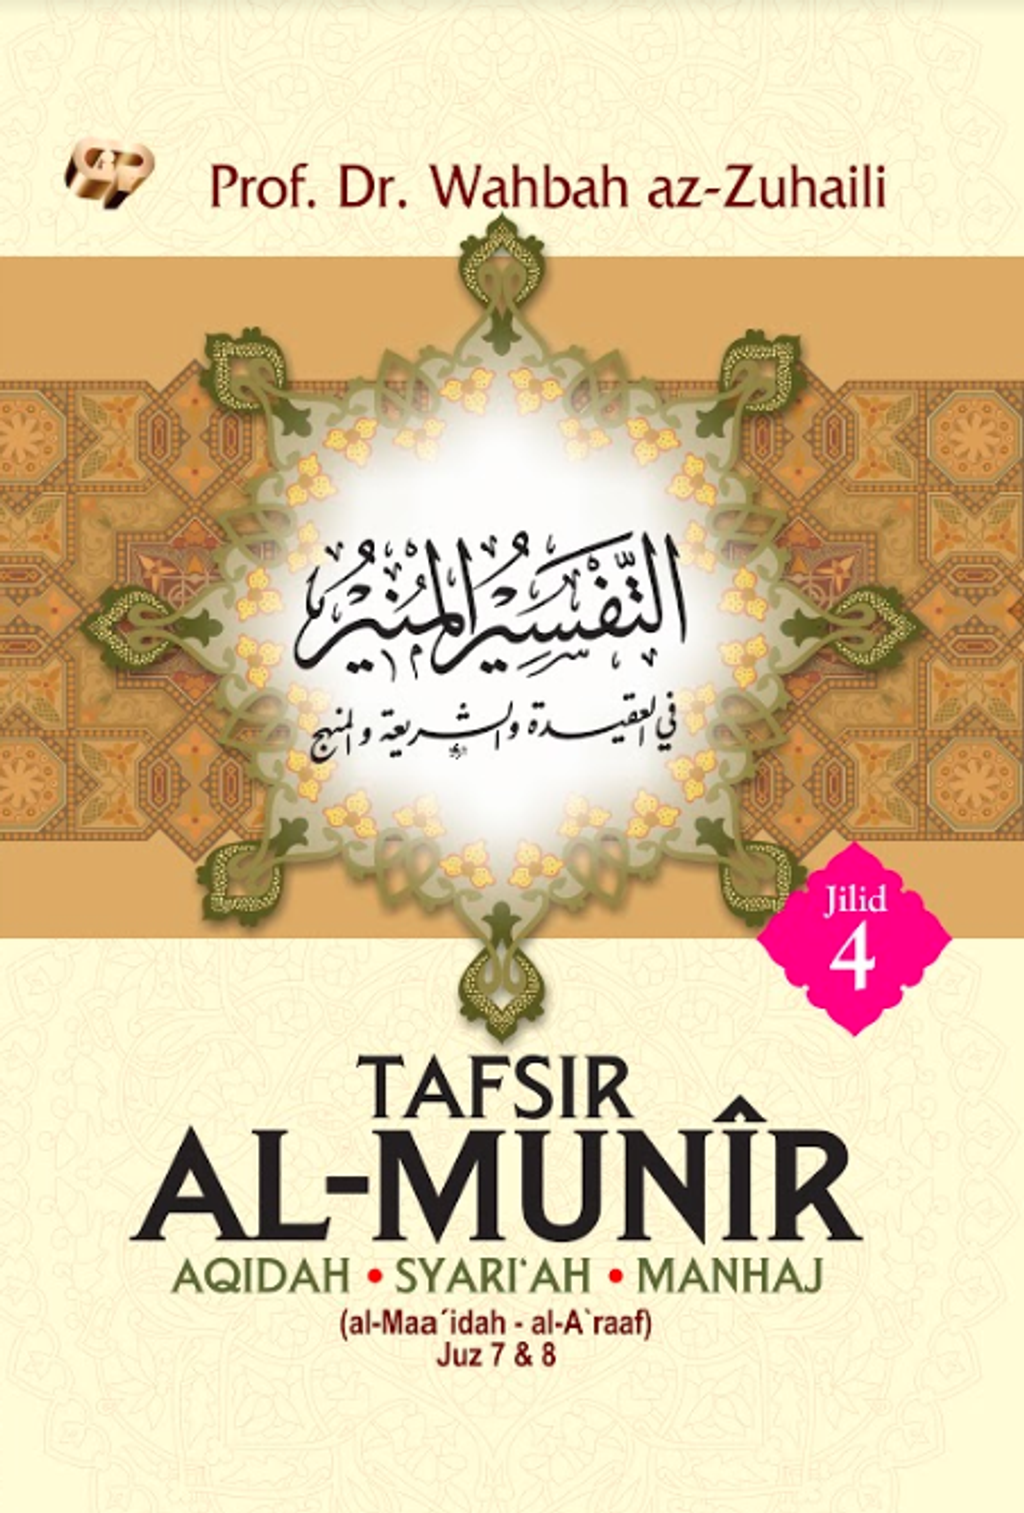 TAFSIR AL-MUNIR JILID 4